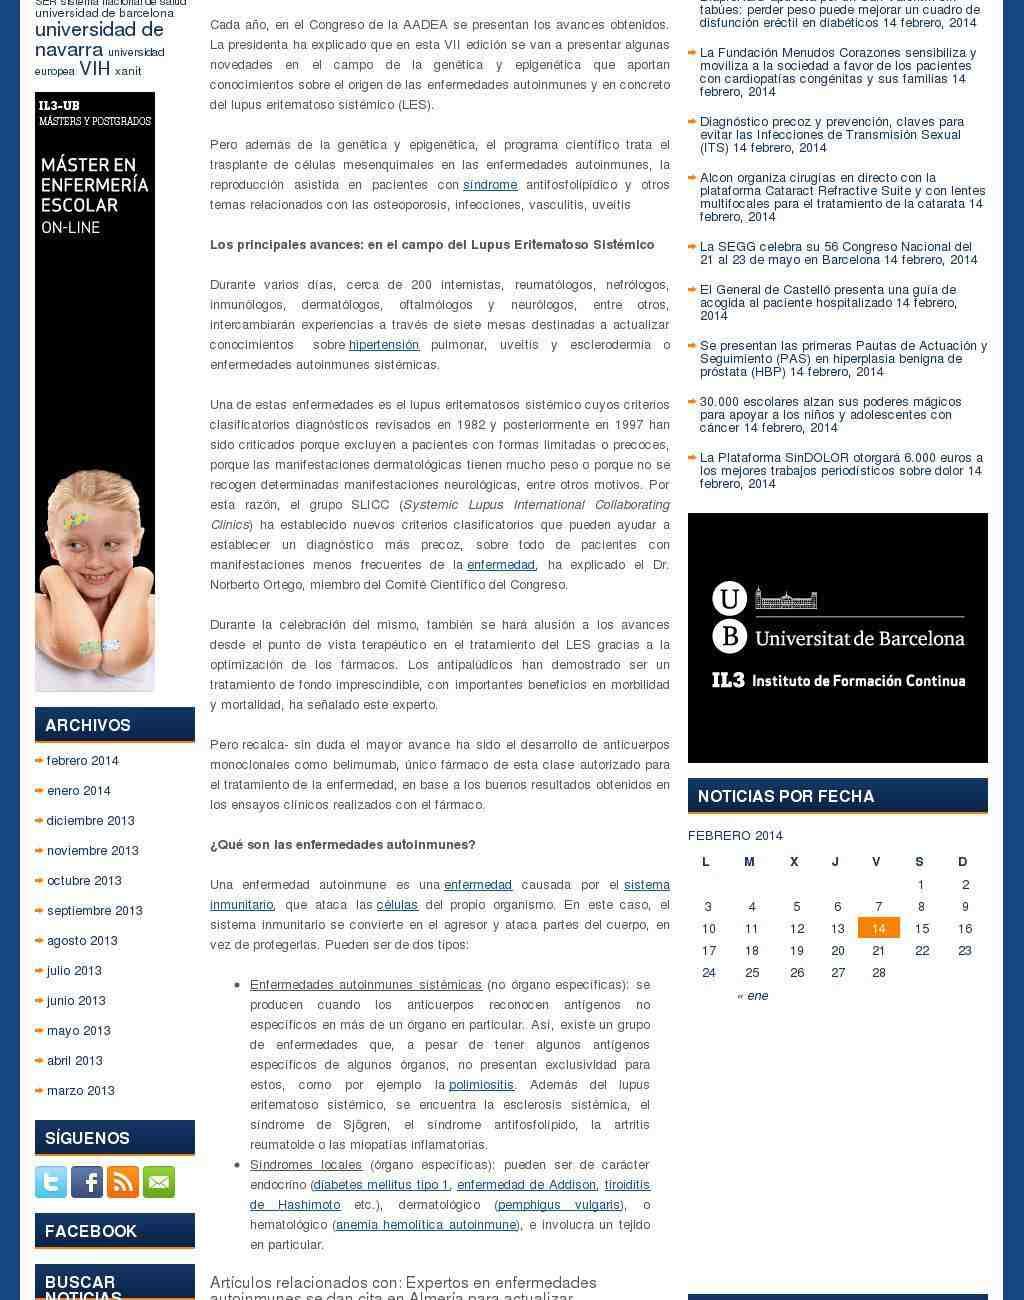 PortalesMedicos.com Jue, 13 de Feb del 2014 11:57 Noticias Médicas Google PageRank: 6 Ranking: 6 Audiencia: 71.